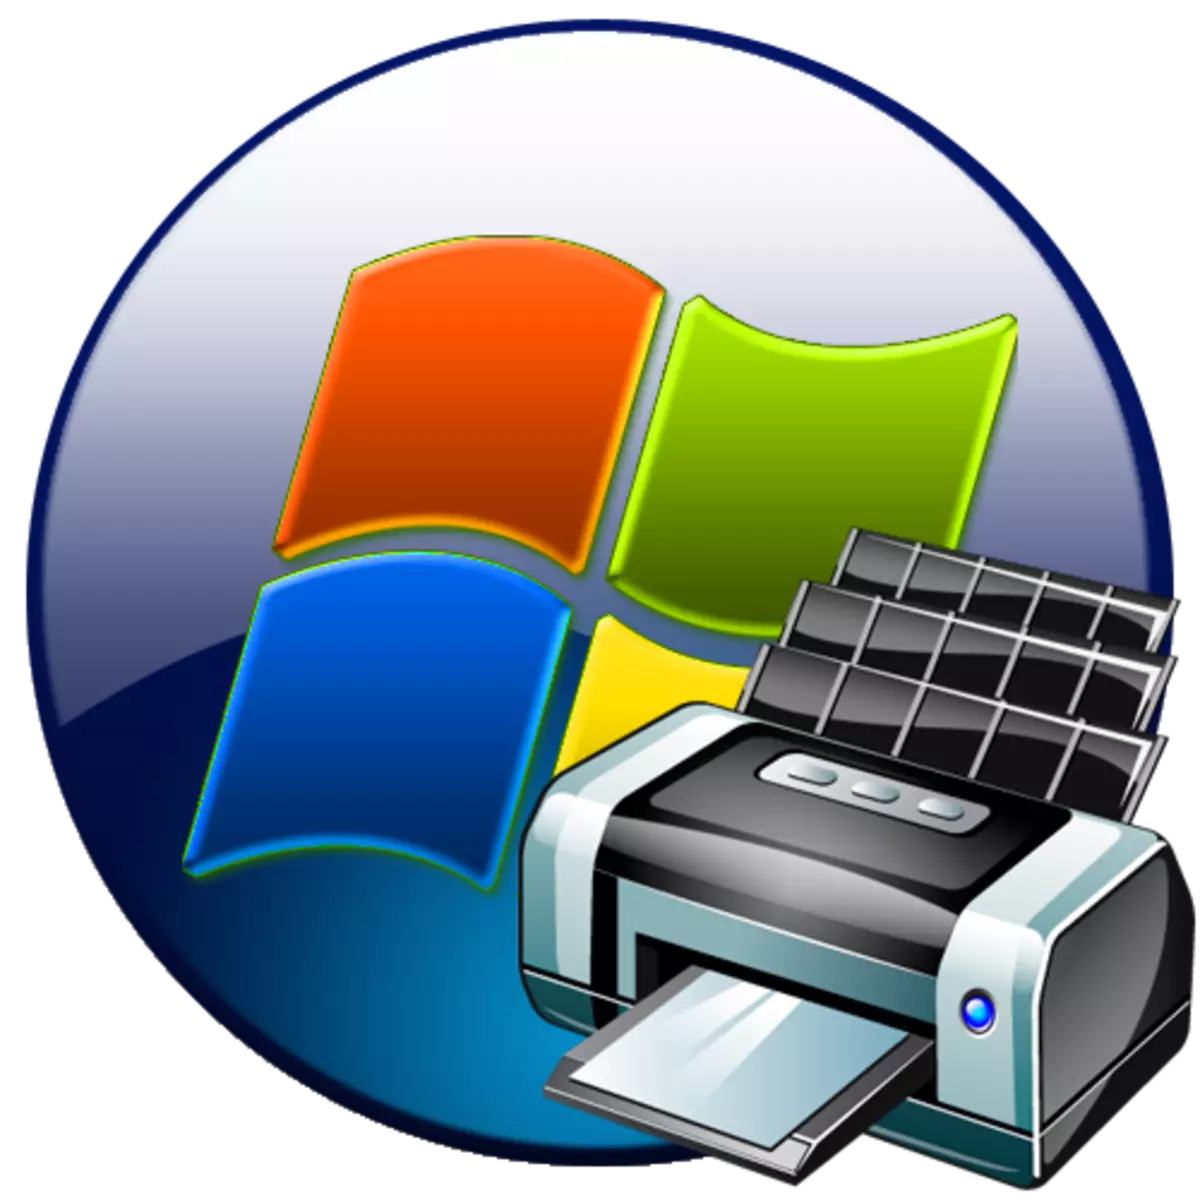 Windows 7에서 "로컬 인쇄 서브 시스템이 실행되지 않음"오류가 해결되었습니다.